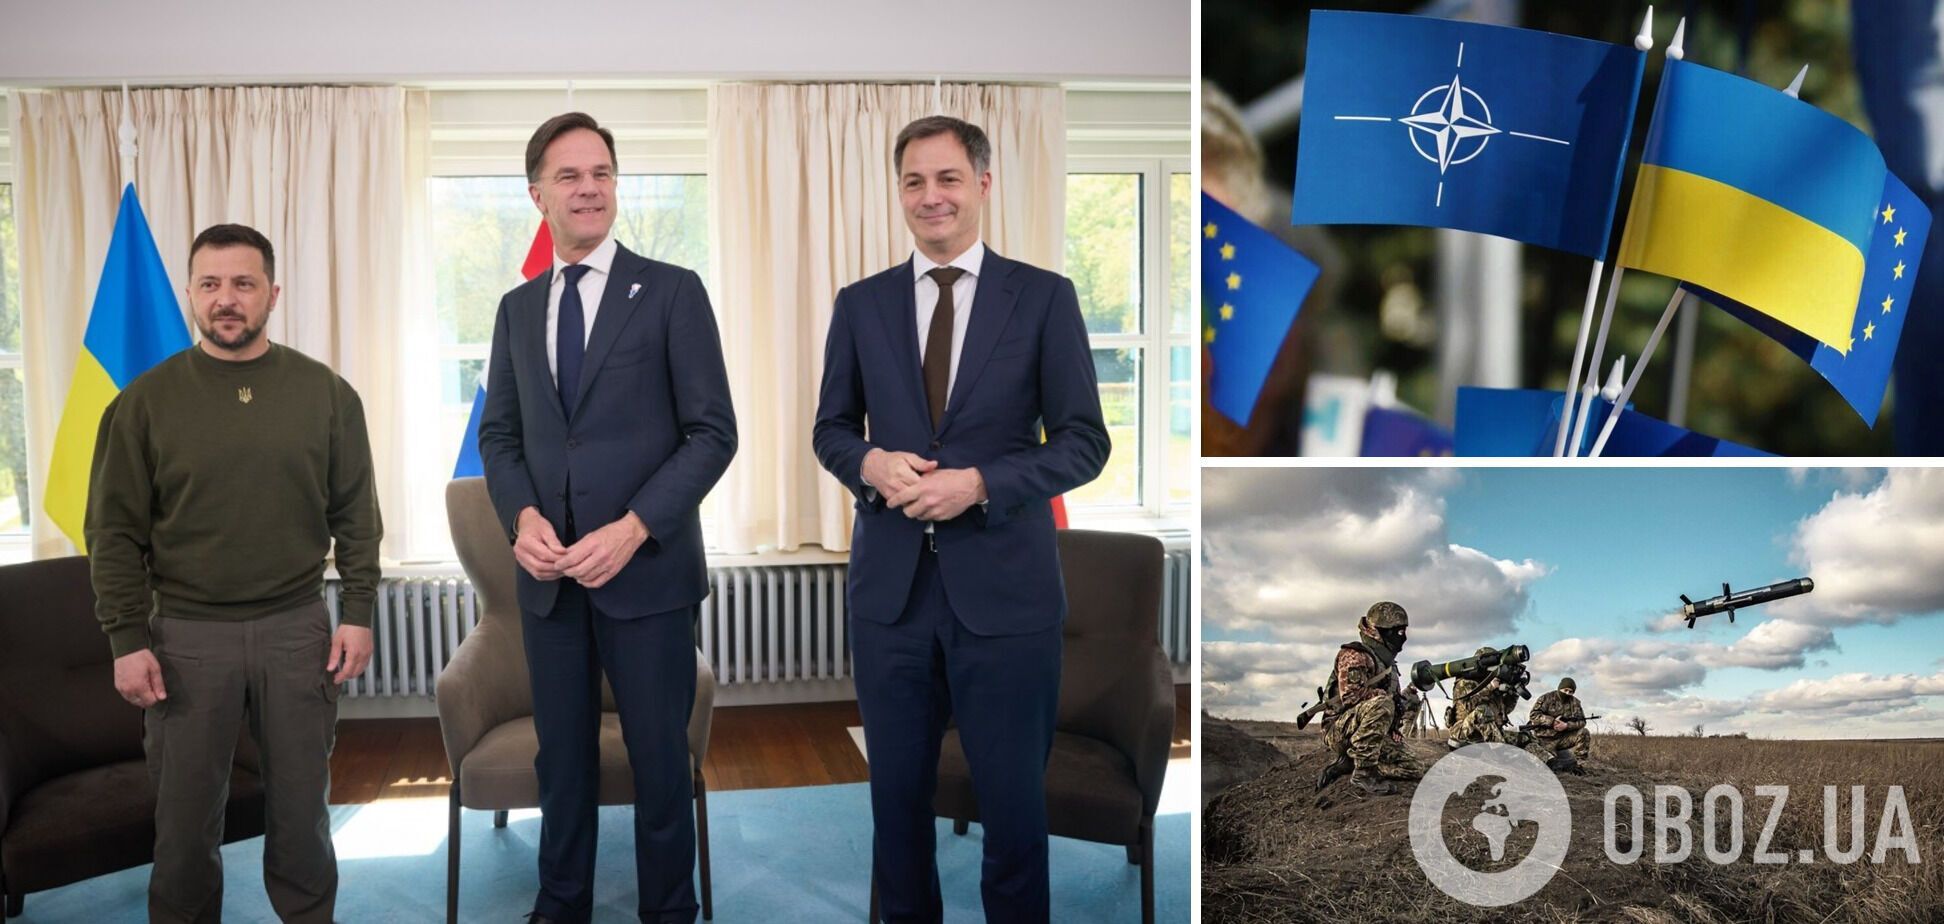 Нидерланды и Бельгия гарантировали Украине военную поддержку: объявлено о декларации и поддержке трибунала над РФ